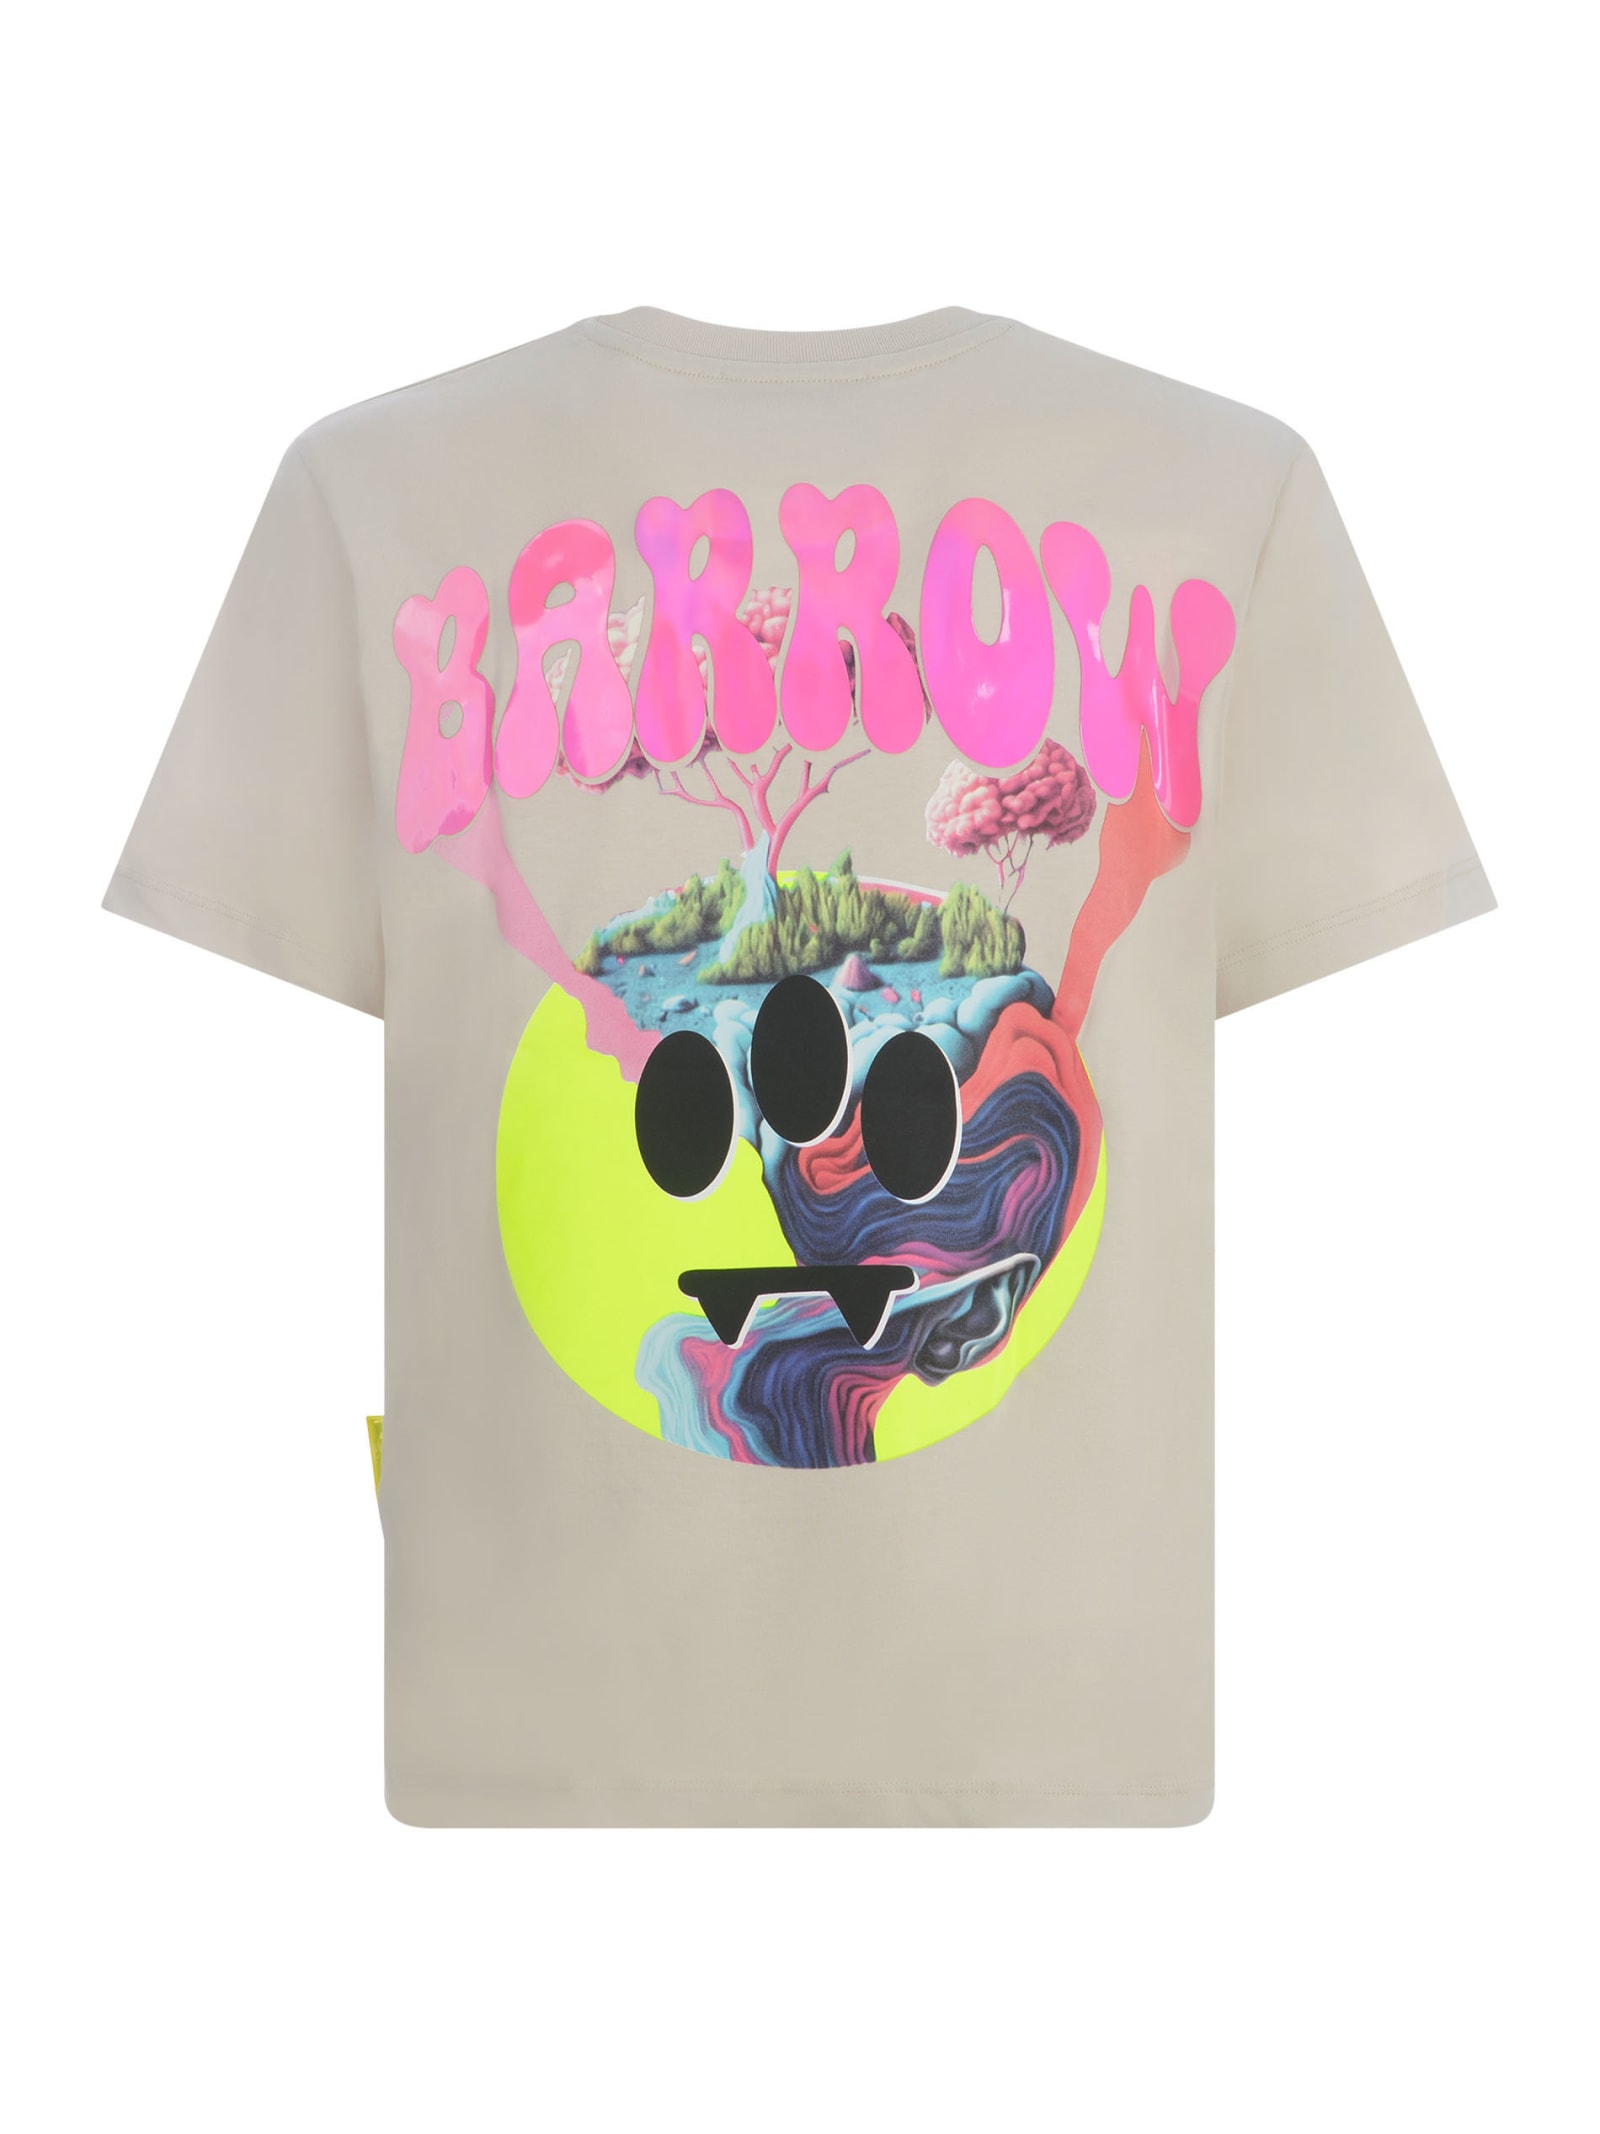 Shop Barrow T-shirt  In Cotton In Beige